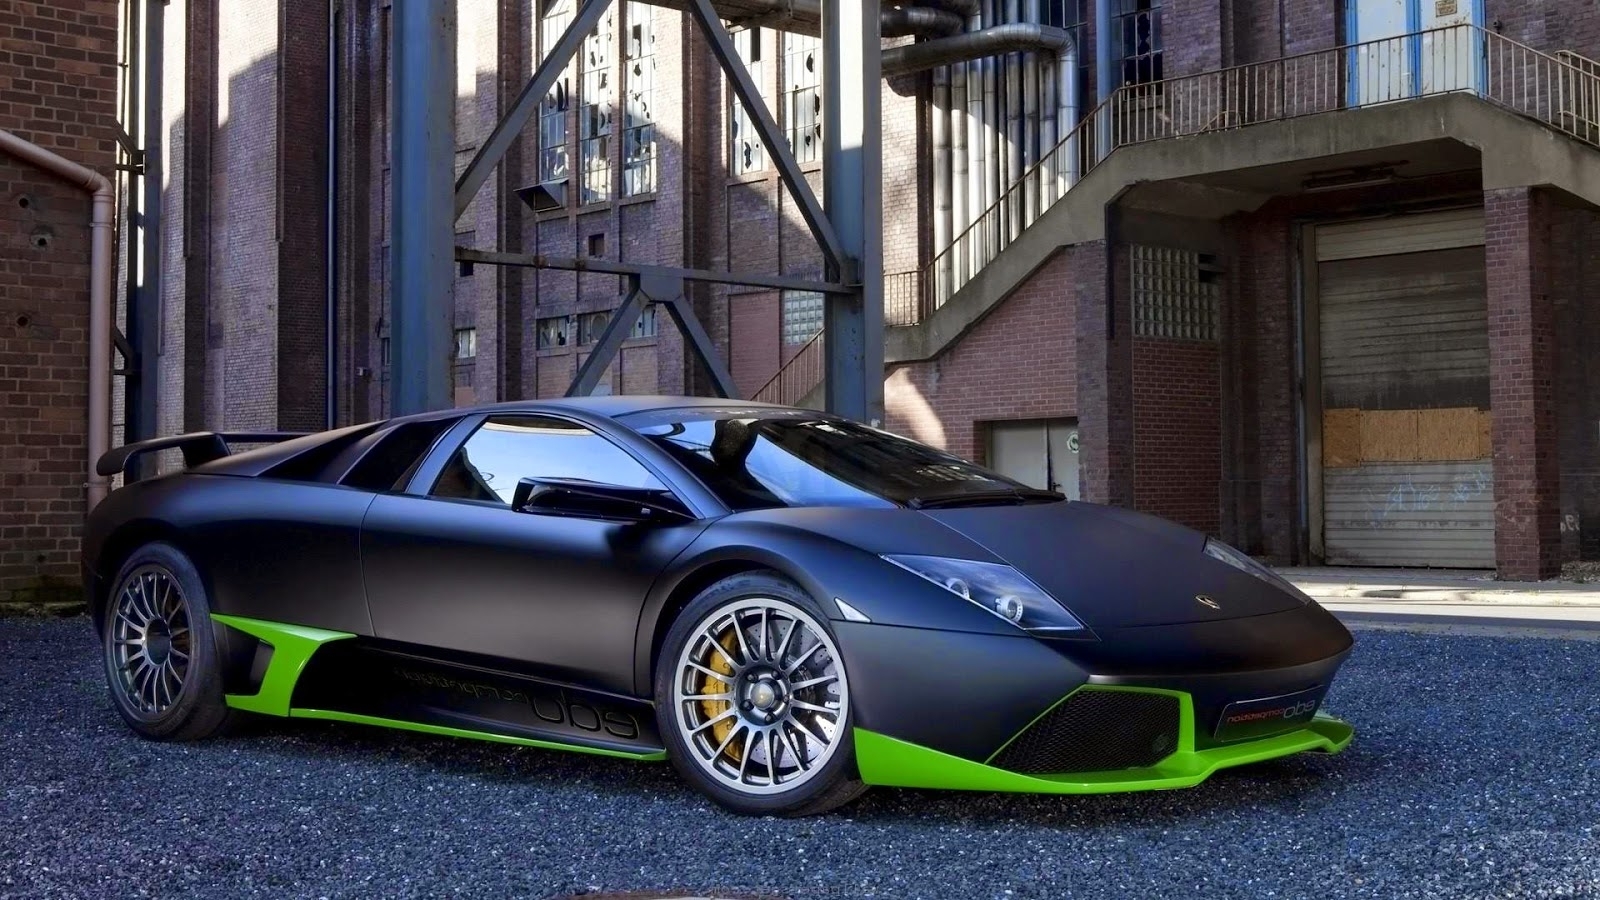 Mobil Lamborghini Modifikasi